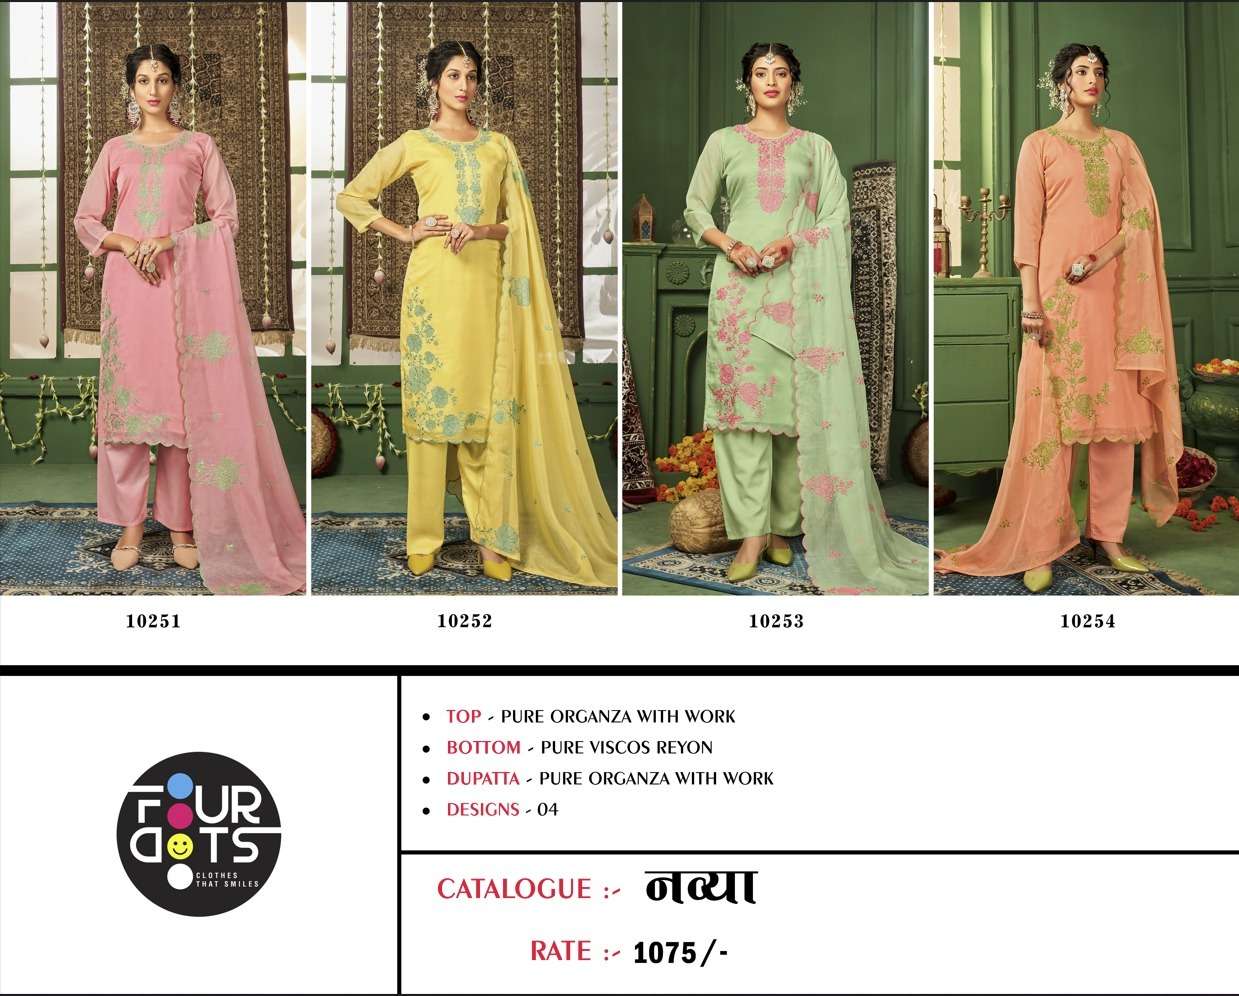 kalarang navya 10251-10254 series pure organza with work designer salwar kameez catalogue manufacturer surat 